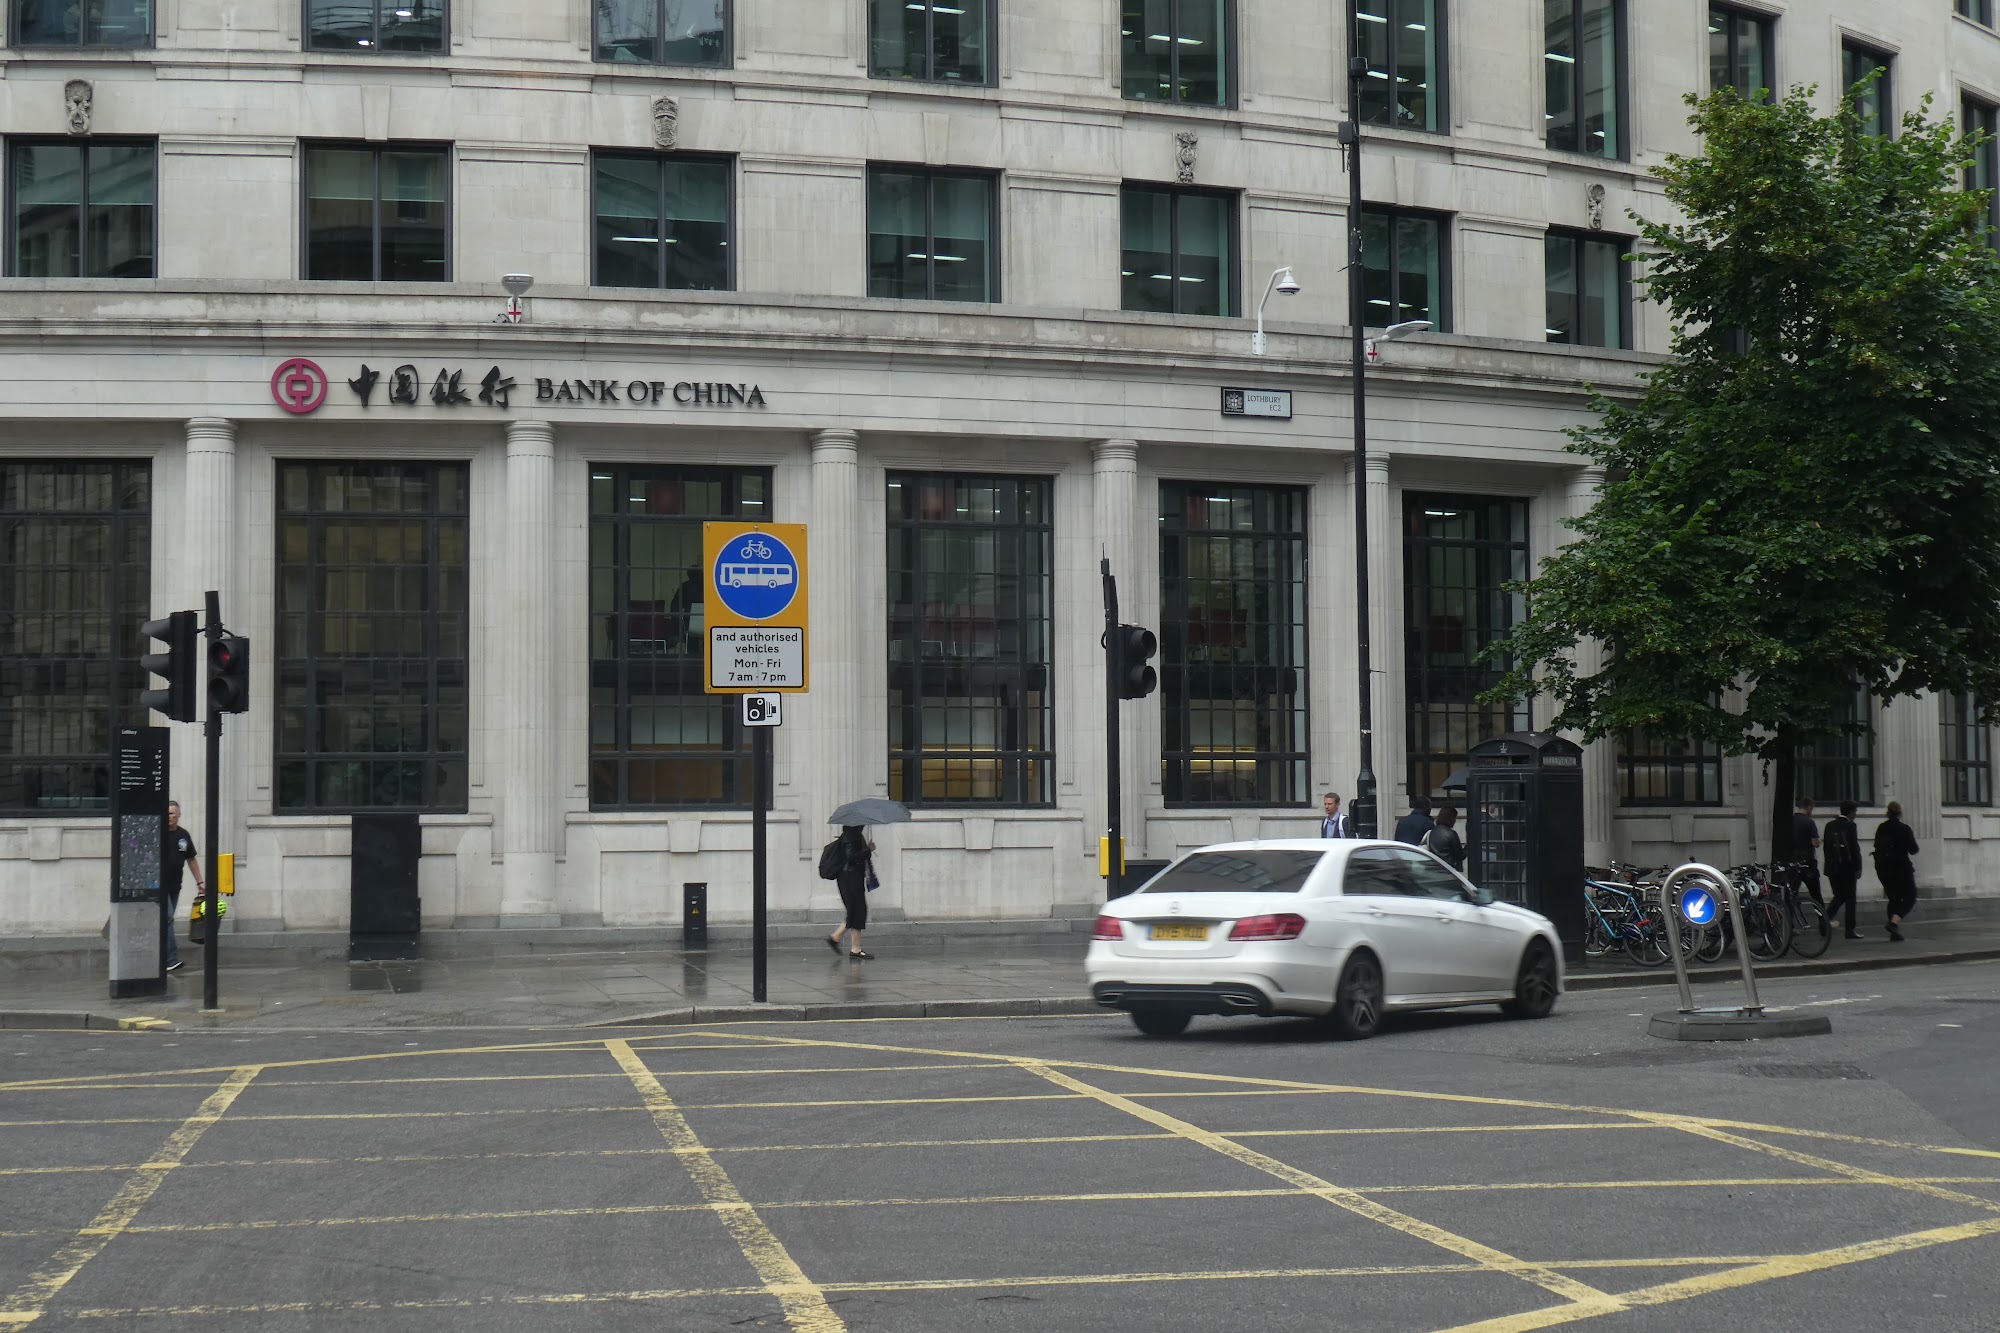 Bank of China - London